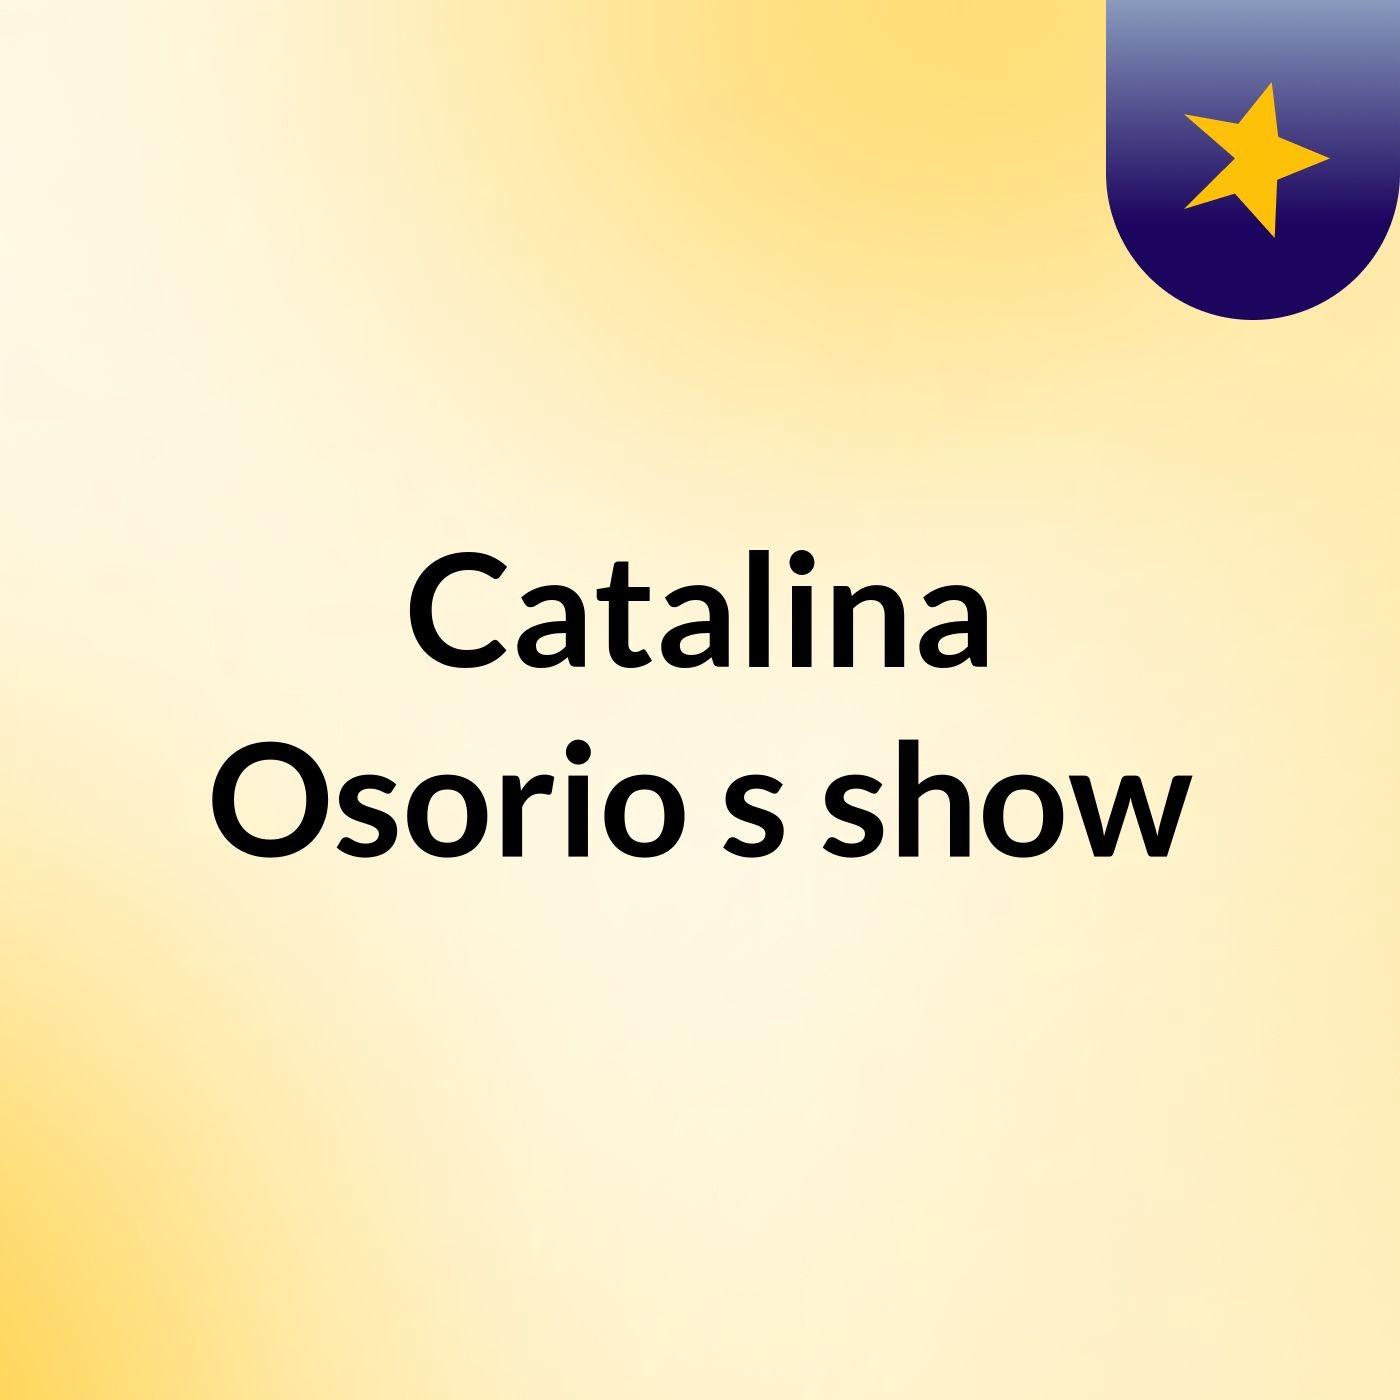 Catalina Osorio's show